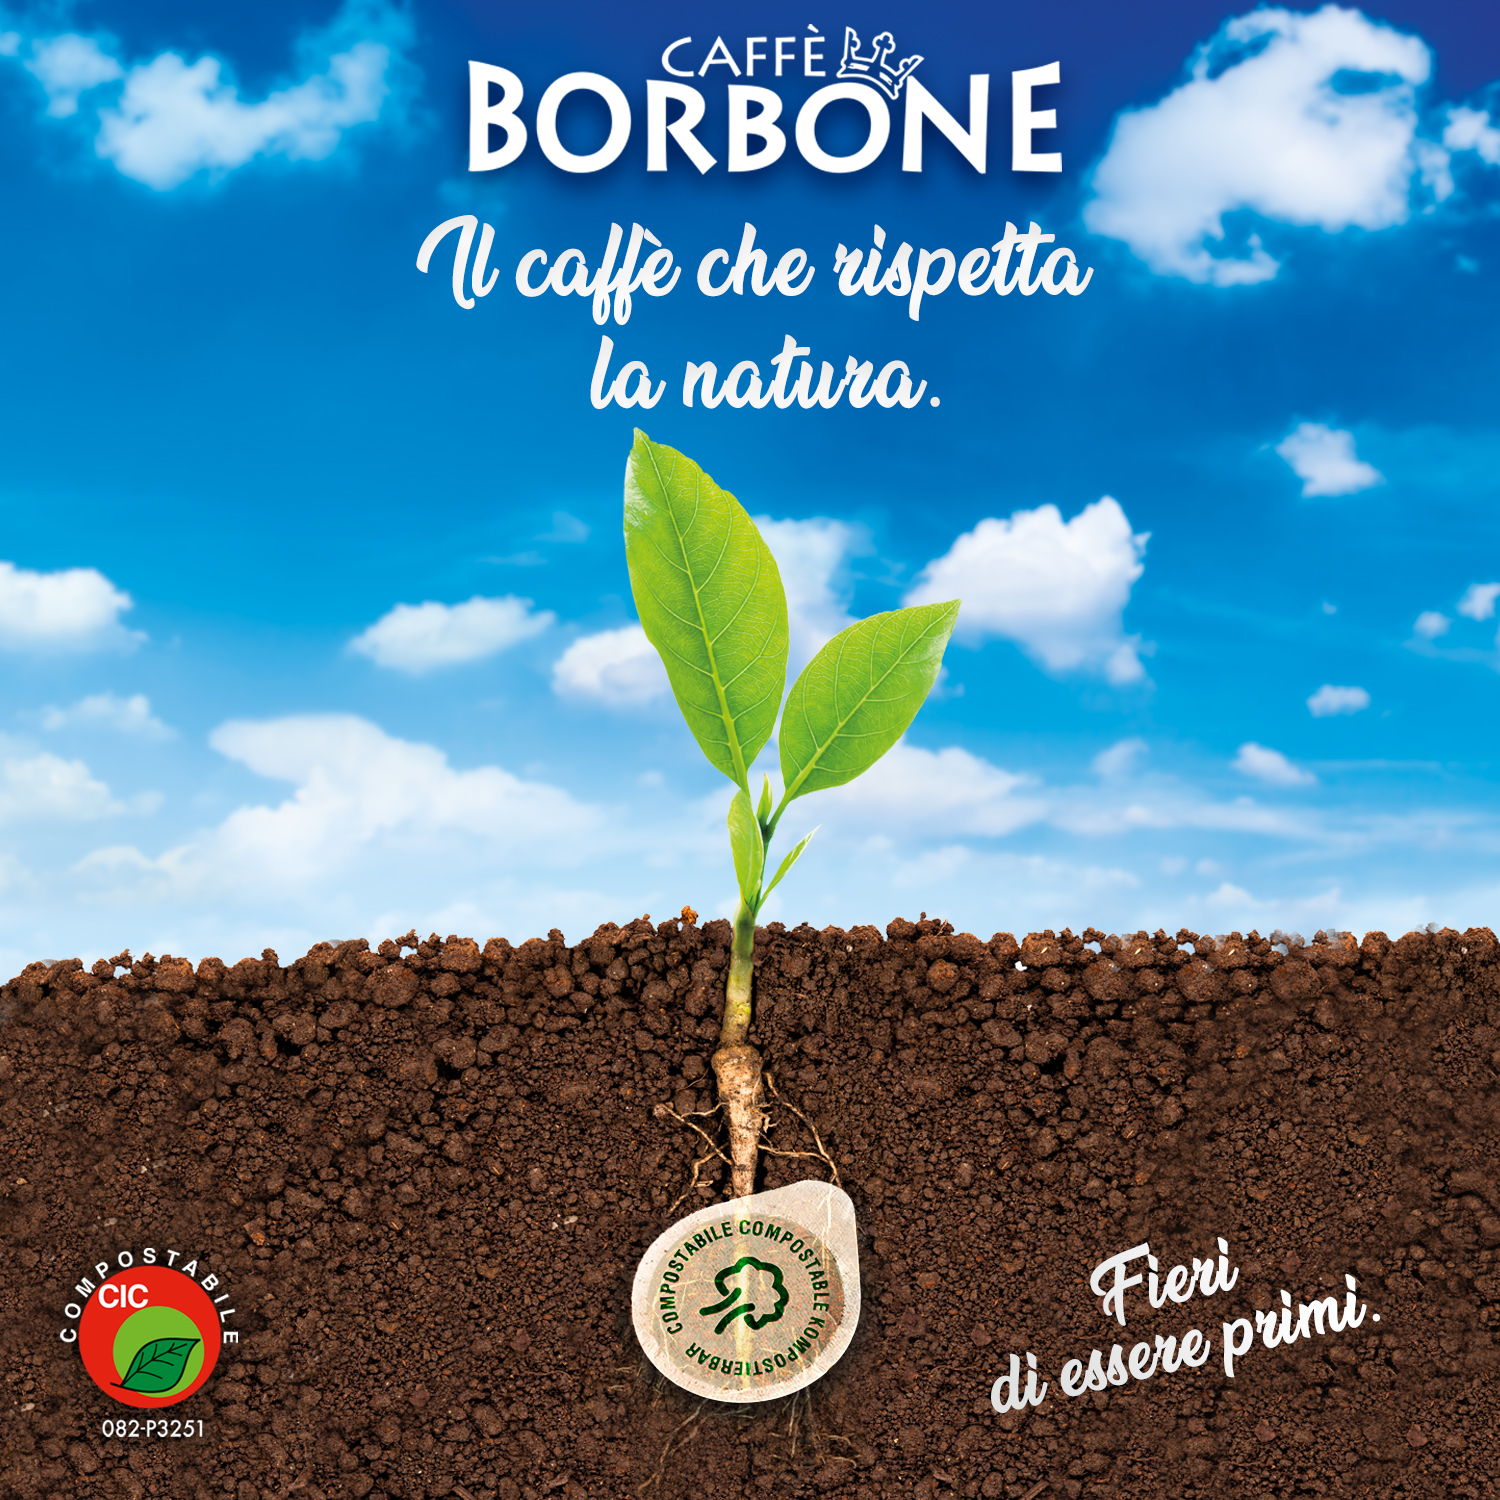 Caffè Borbone: punta sul connubio tra tradizione e sostenibilità